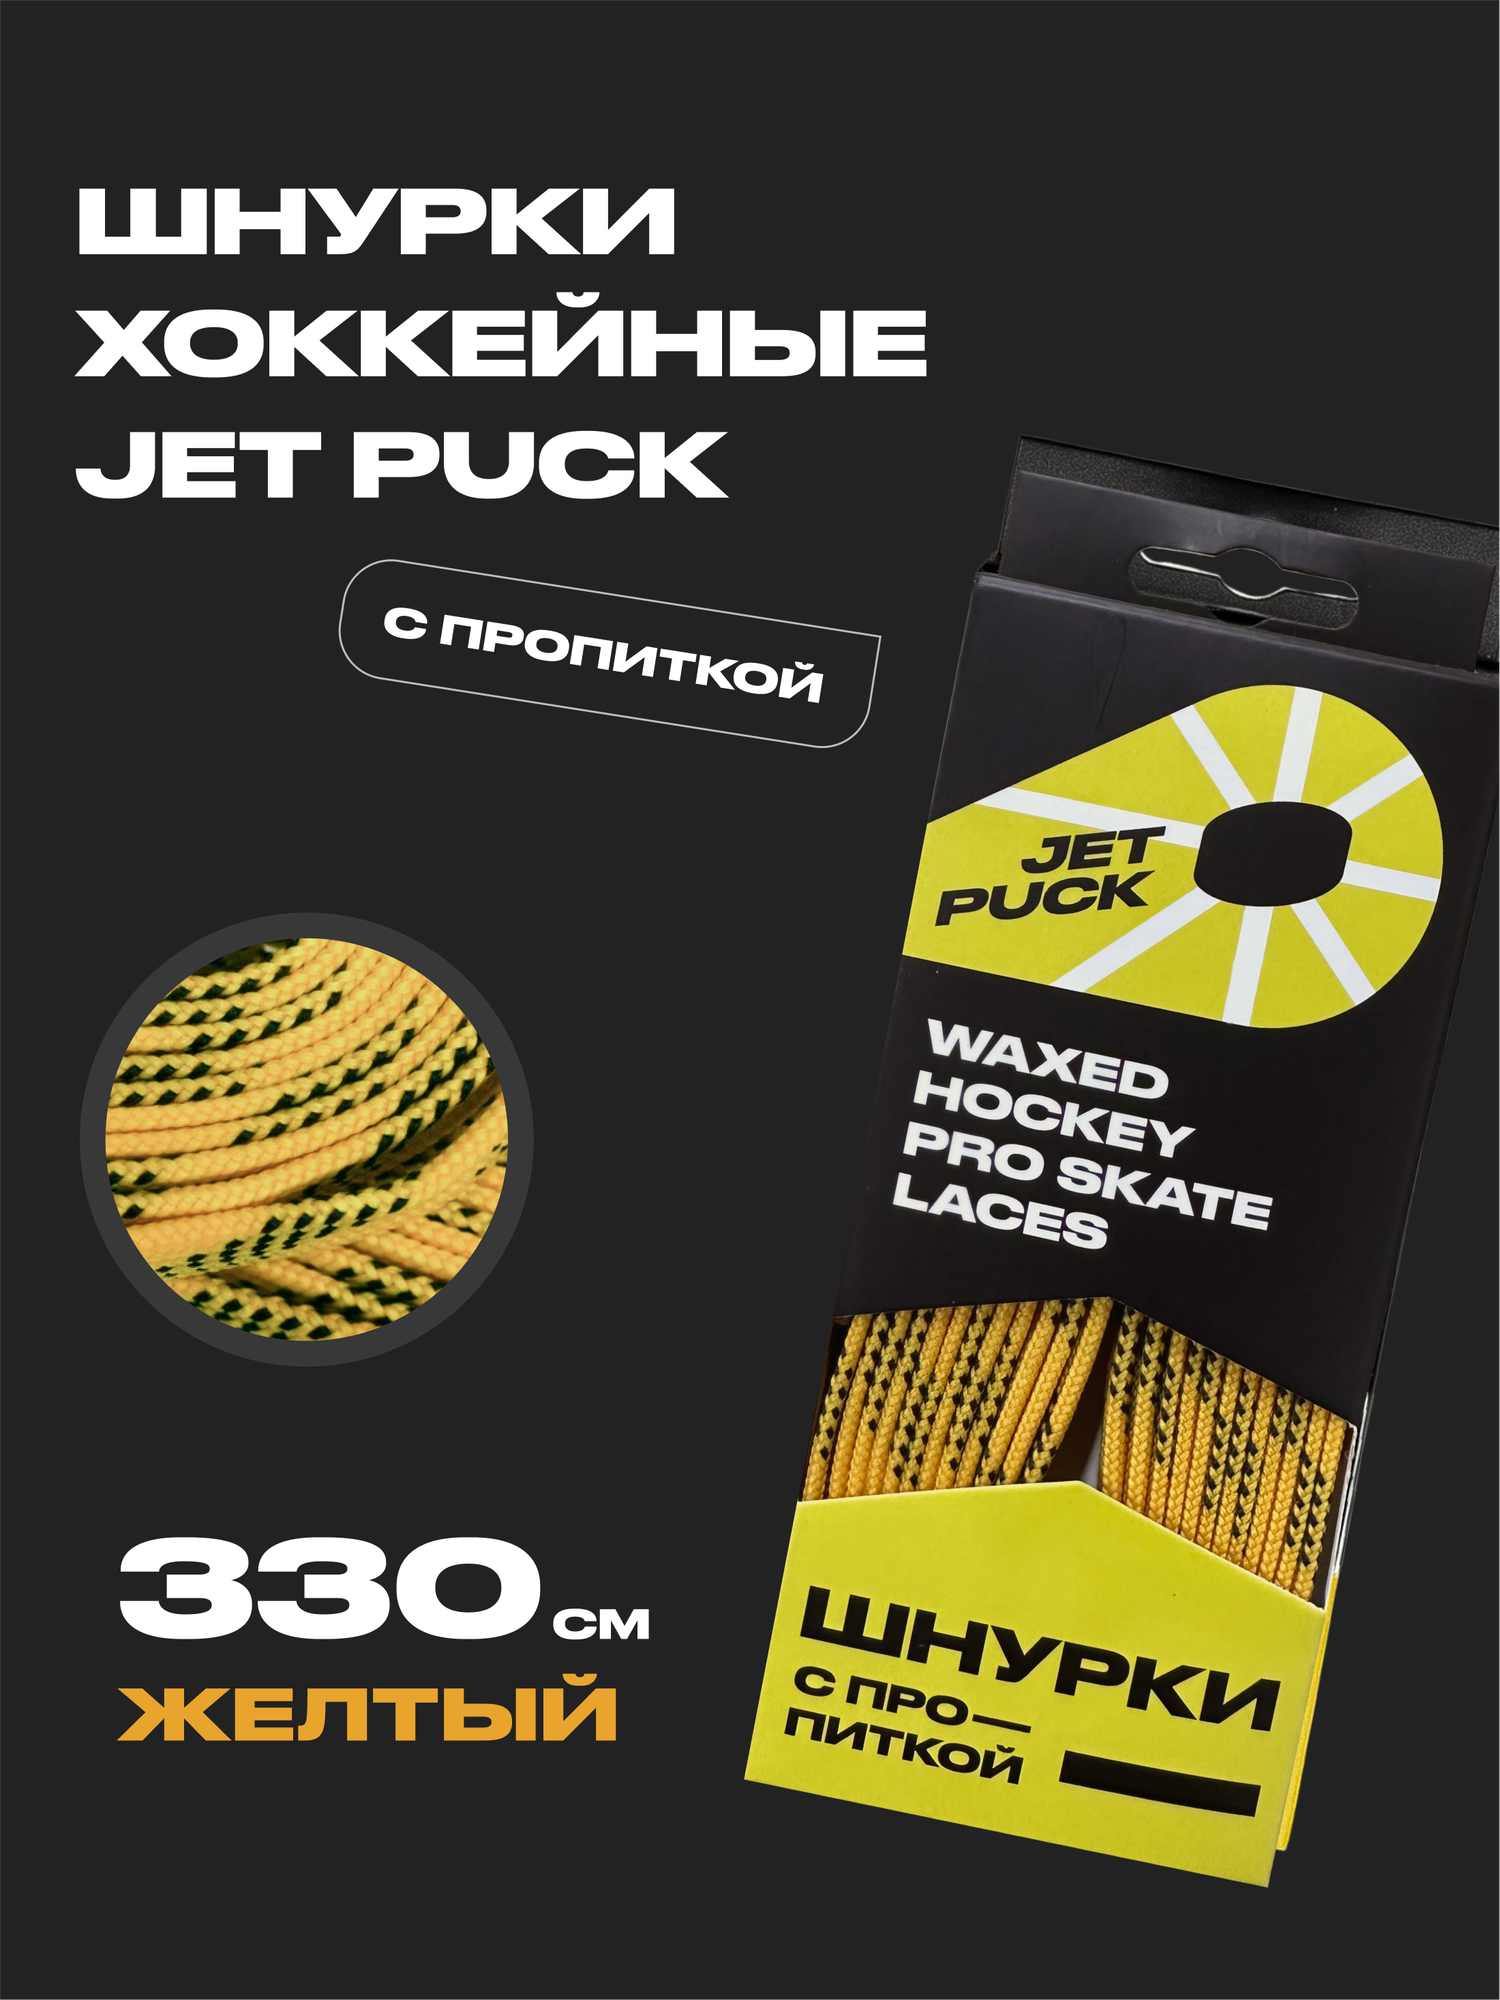 JetPuck / Шнурки хоккейные с пропиткой для коньков 330 см, желтый